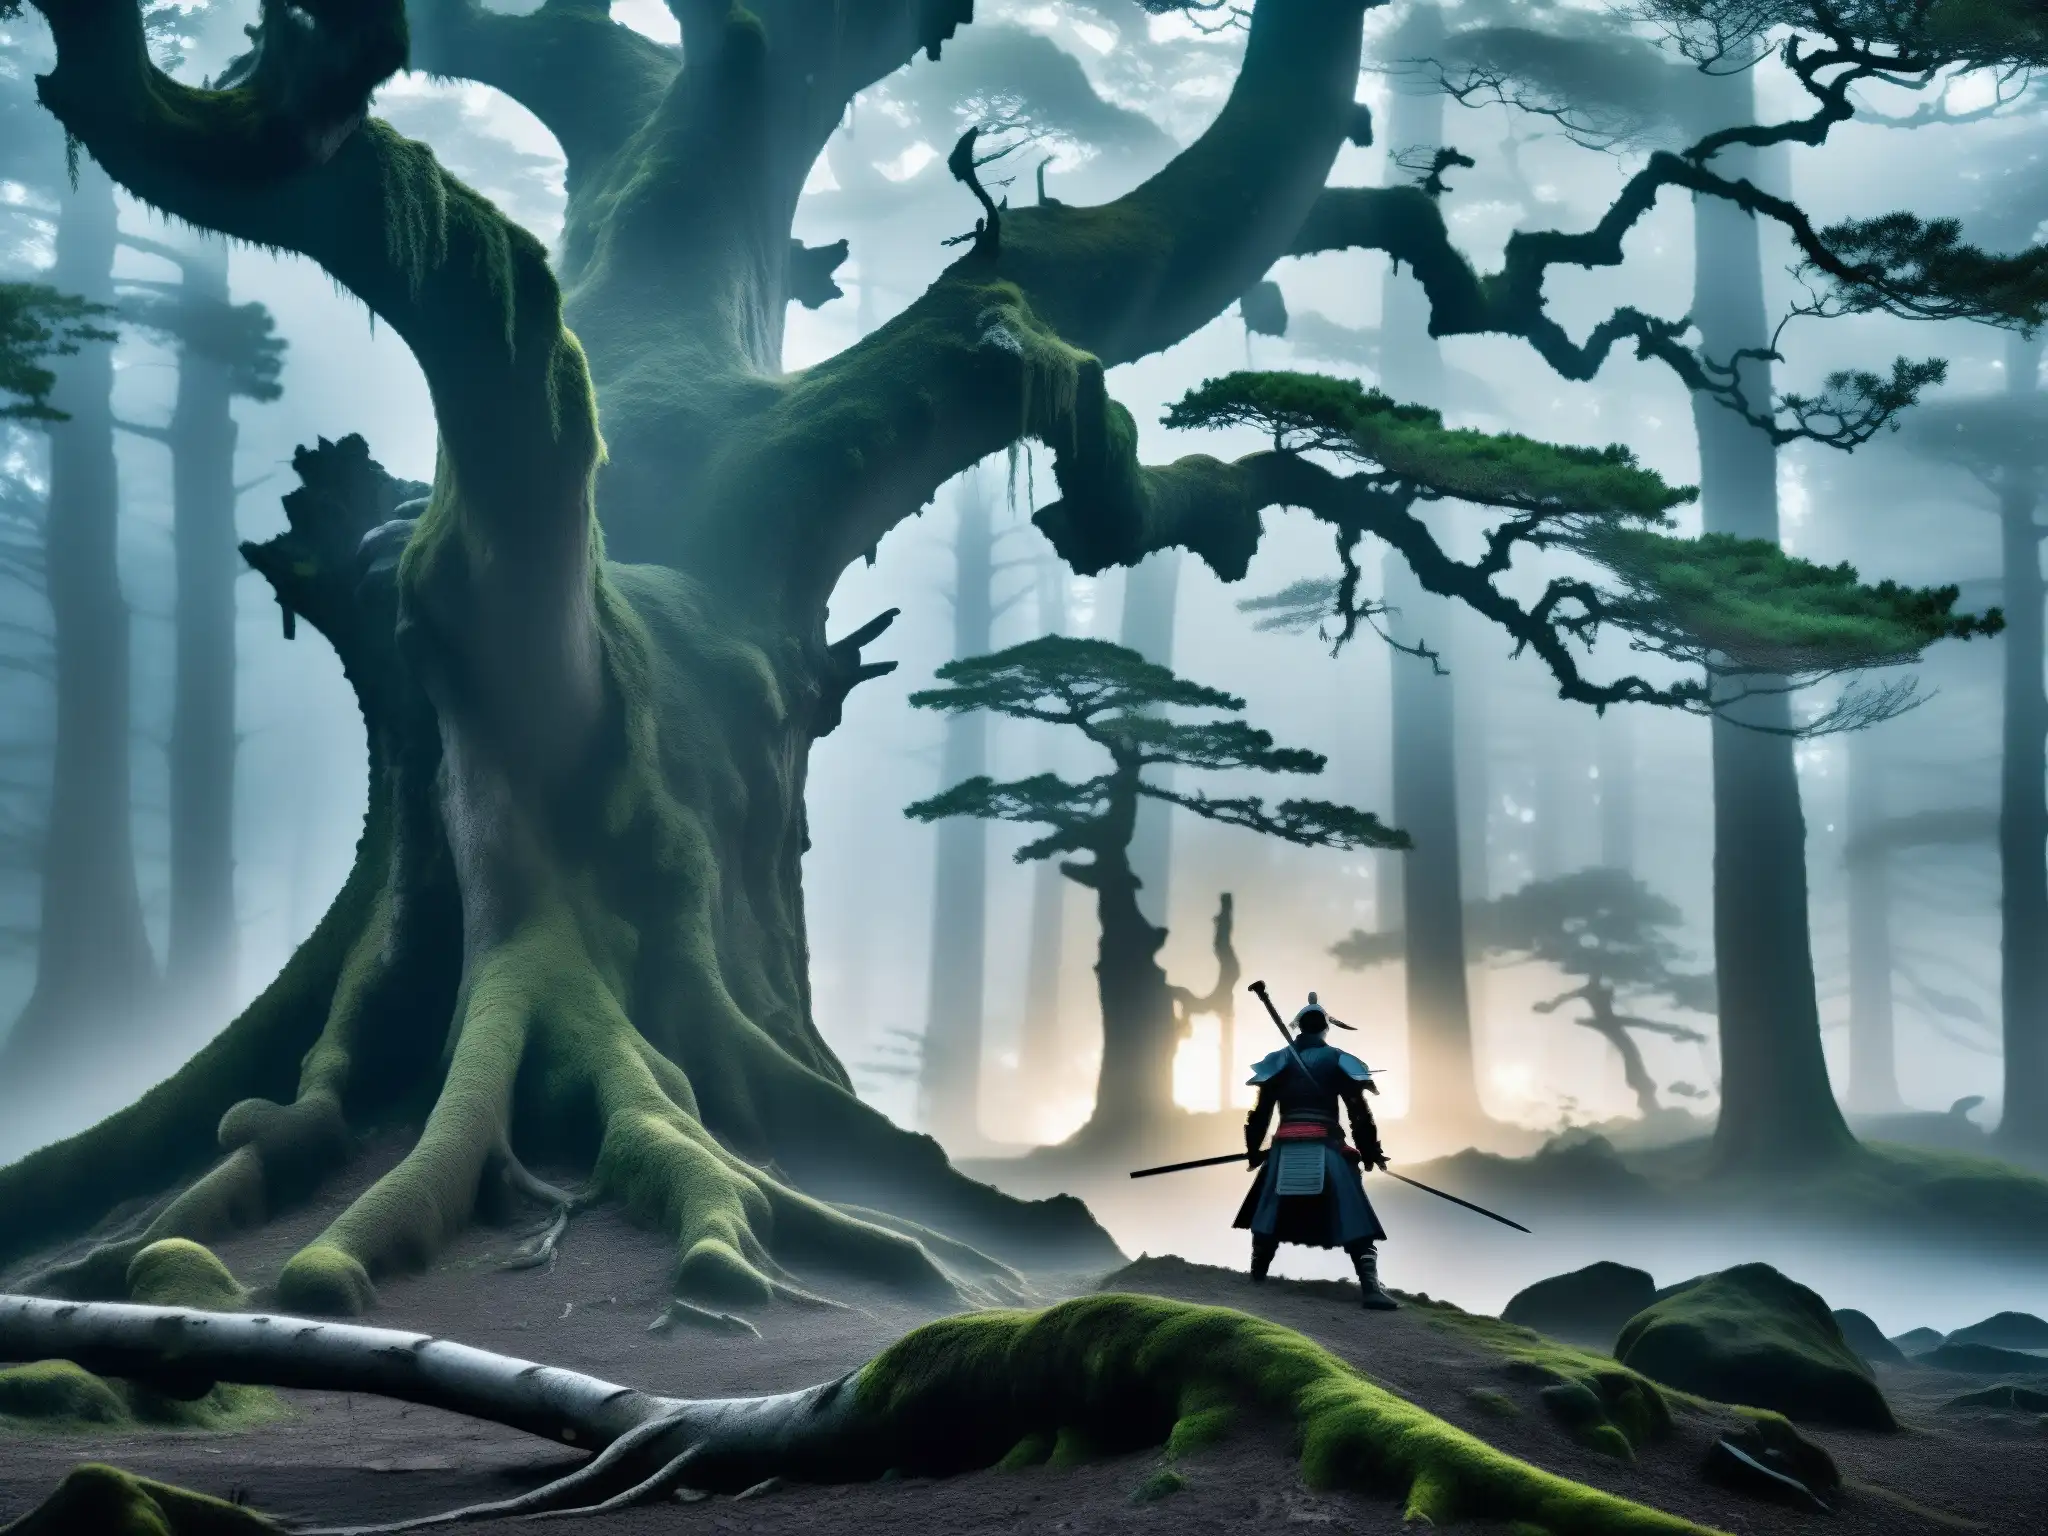 Un bosque japonés con leyendas urbanas samurái sin cabeza, envuelto en una atmósfera mística y vengativa